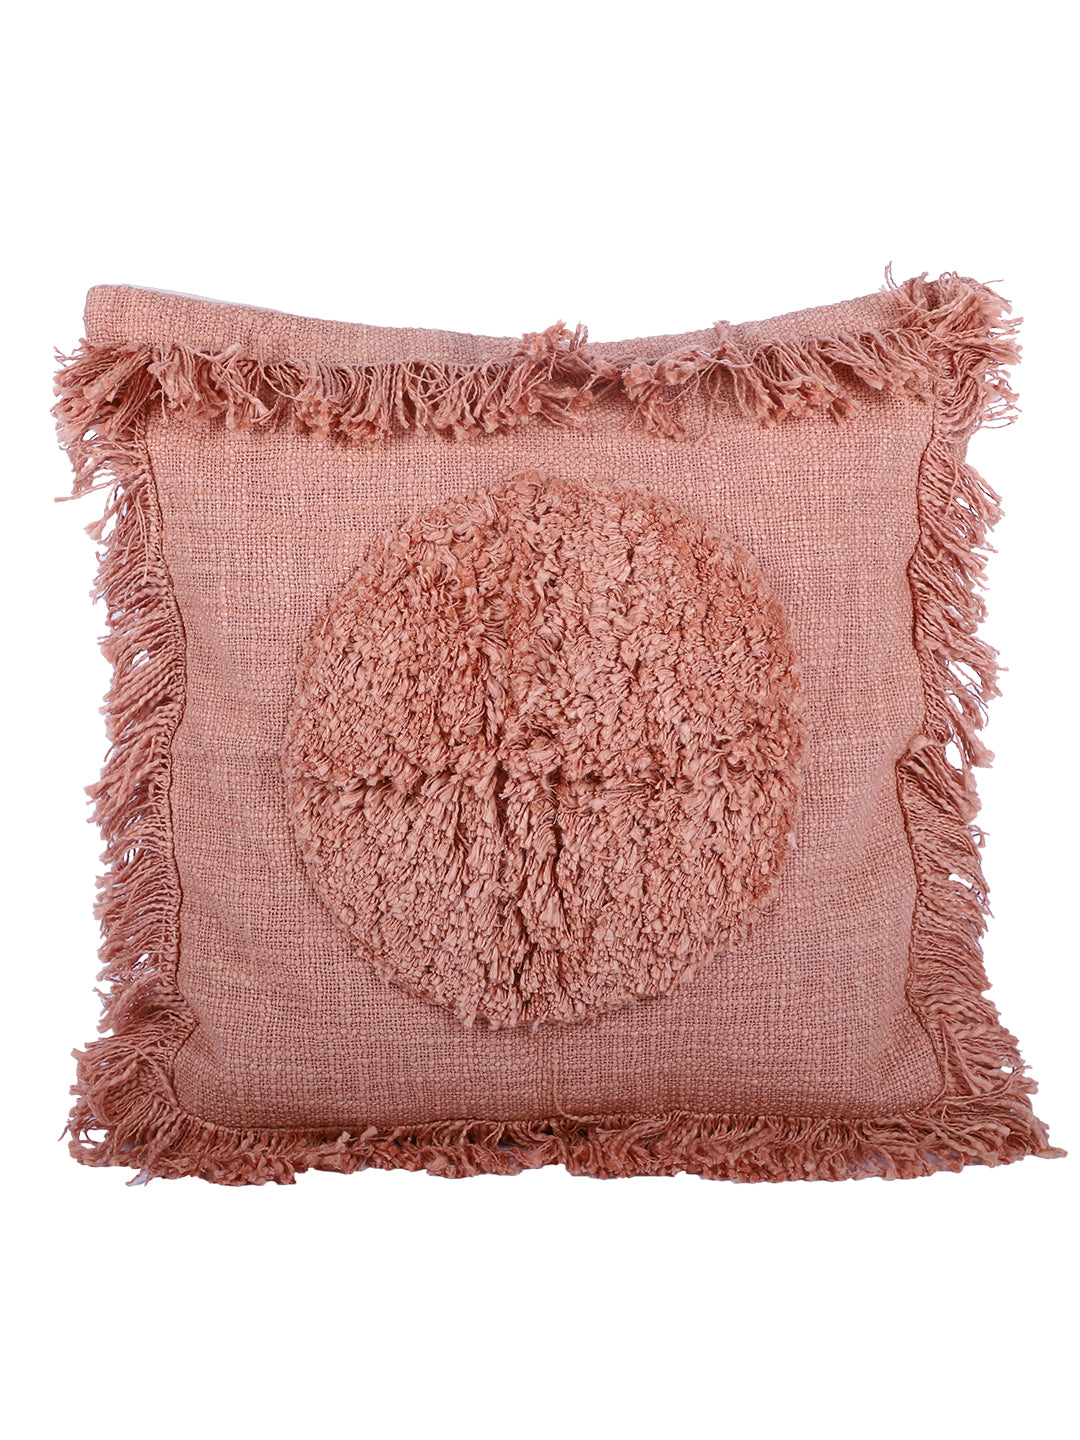 Peach Color 18 X18 Handmade Cotton Cushion Cover